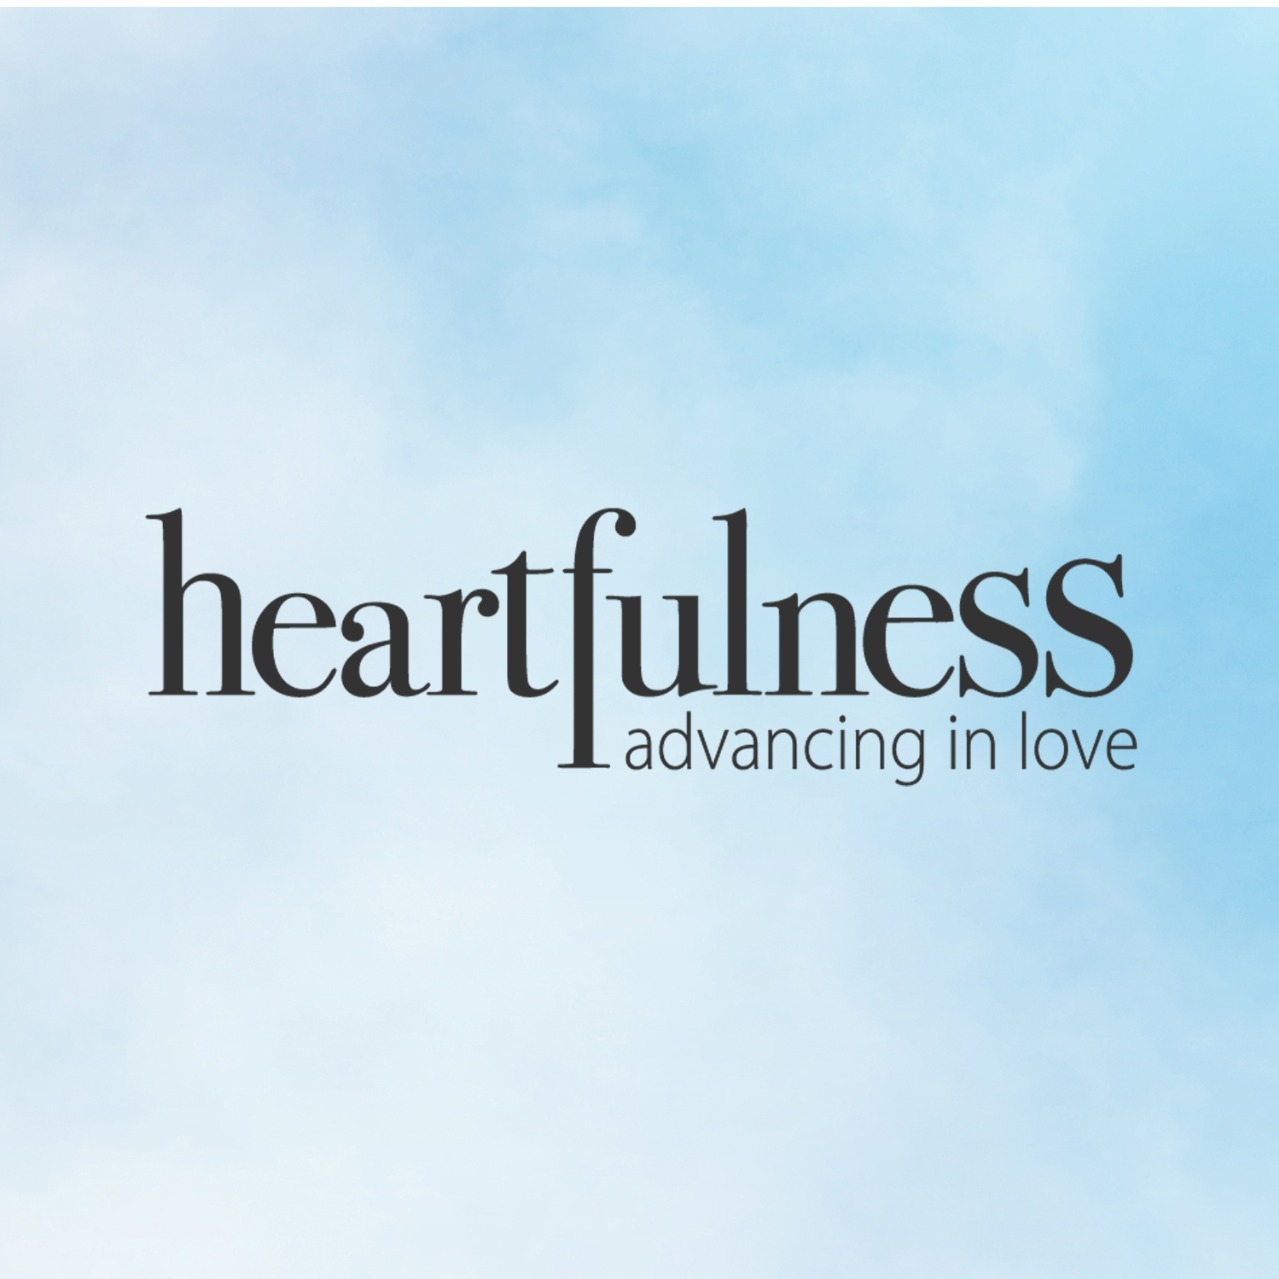 Heartfulness Institute logo